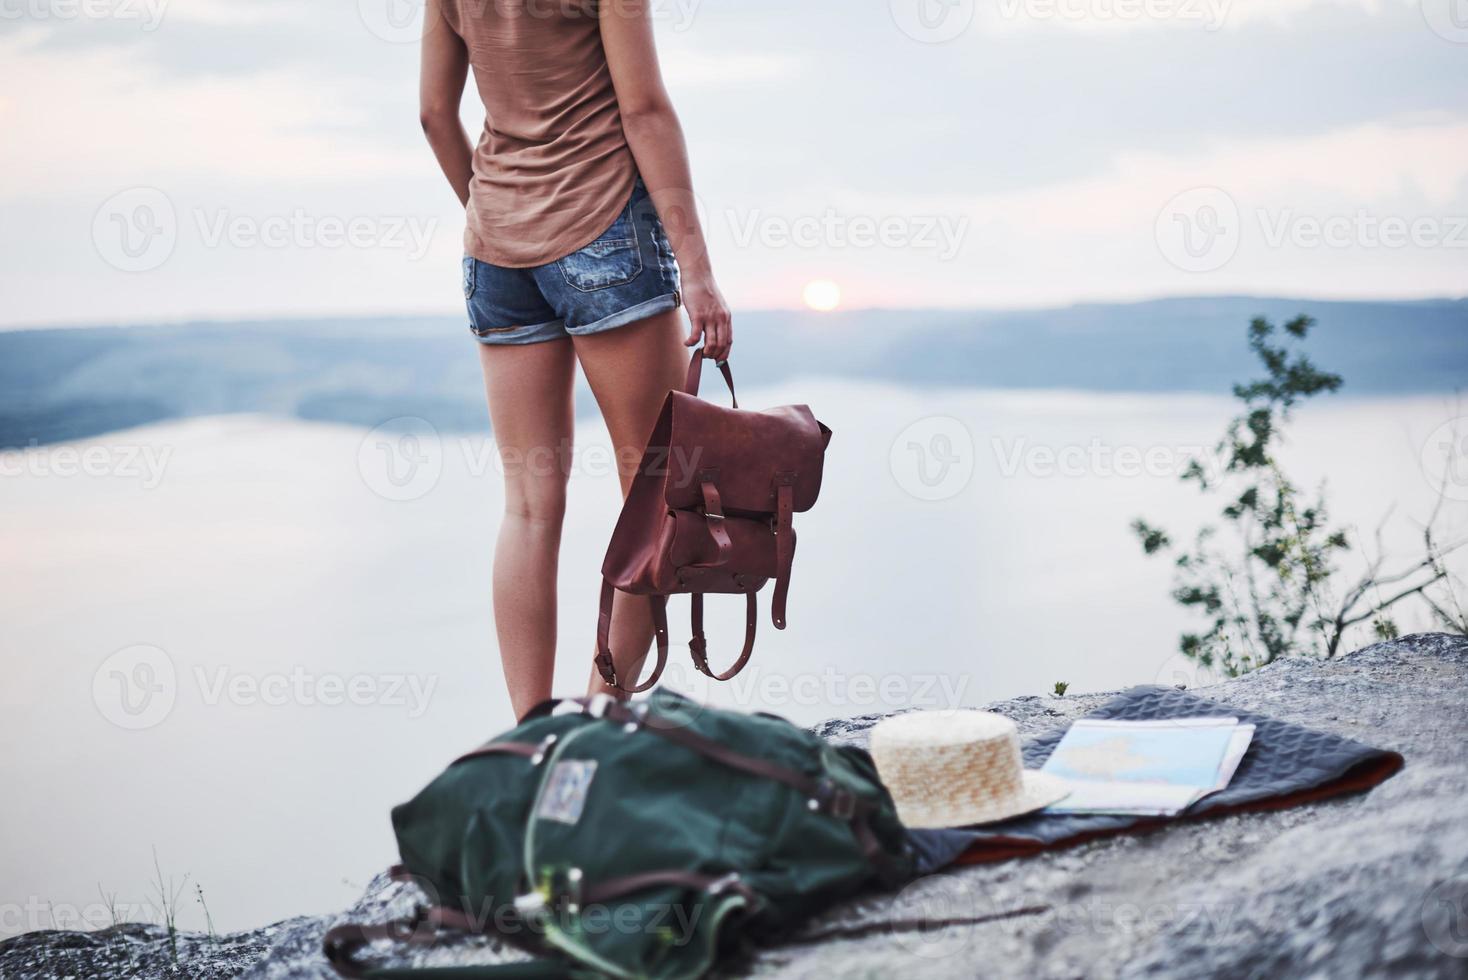 ragazza solitaria in piedi vicino al bordo della roccia guardando il bellissimo paesaggio con la borsa in mano foto